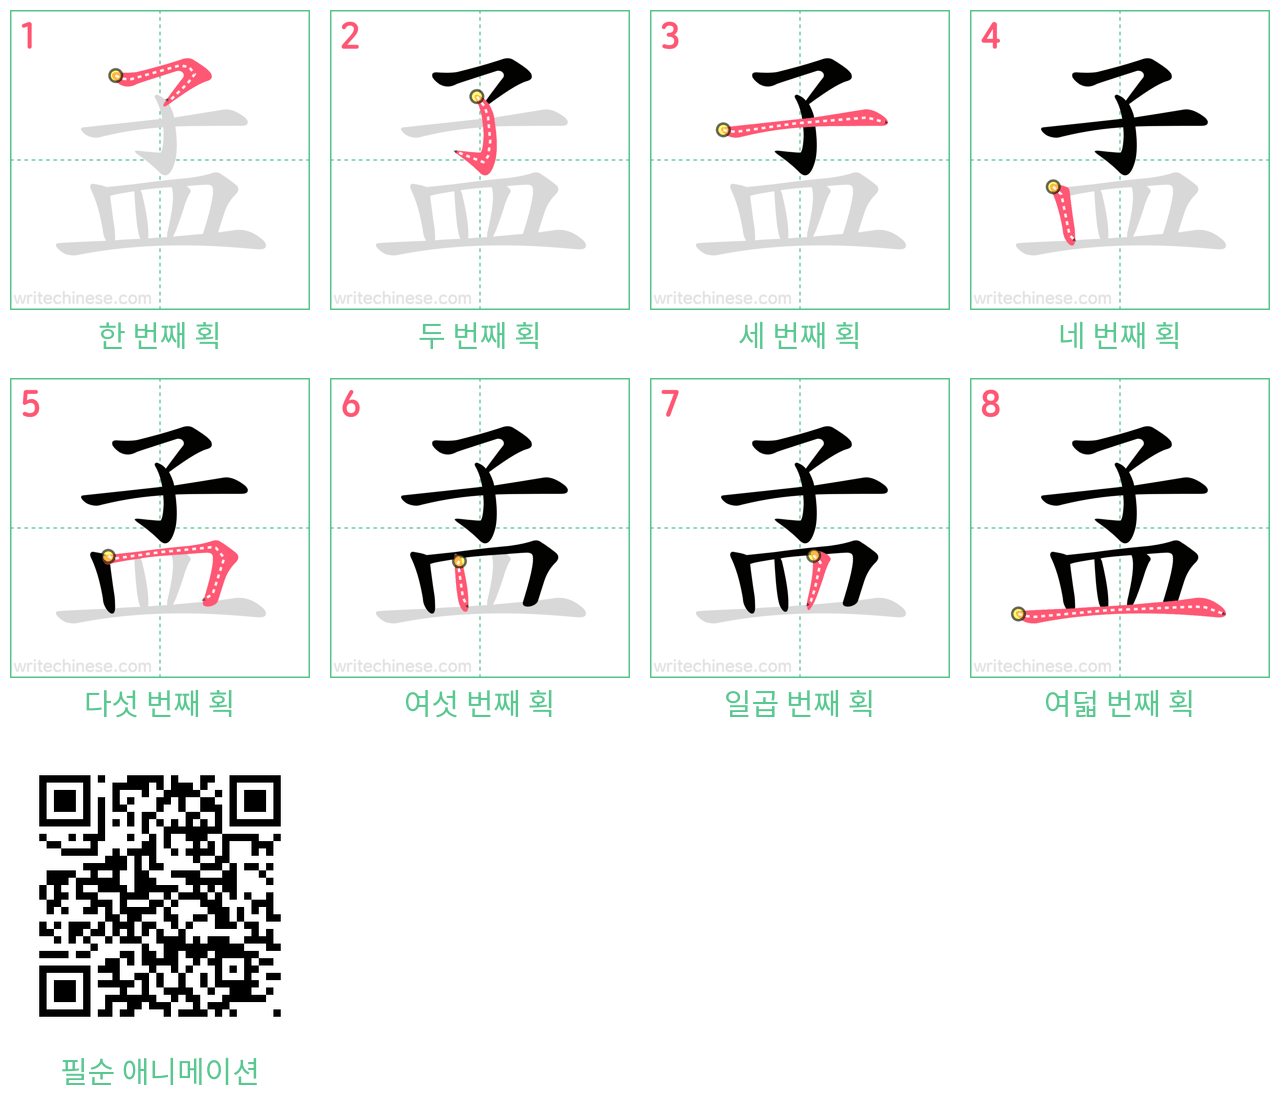 孟 step-by-step stroke order diagrams